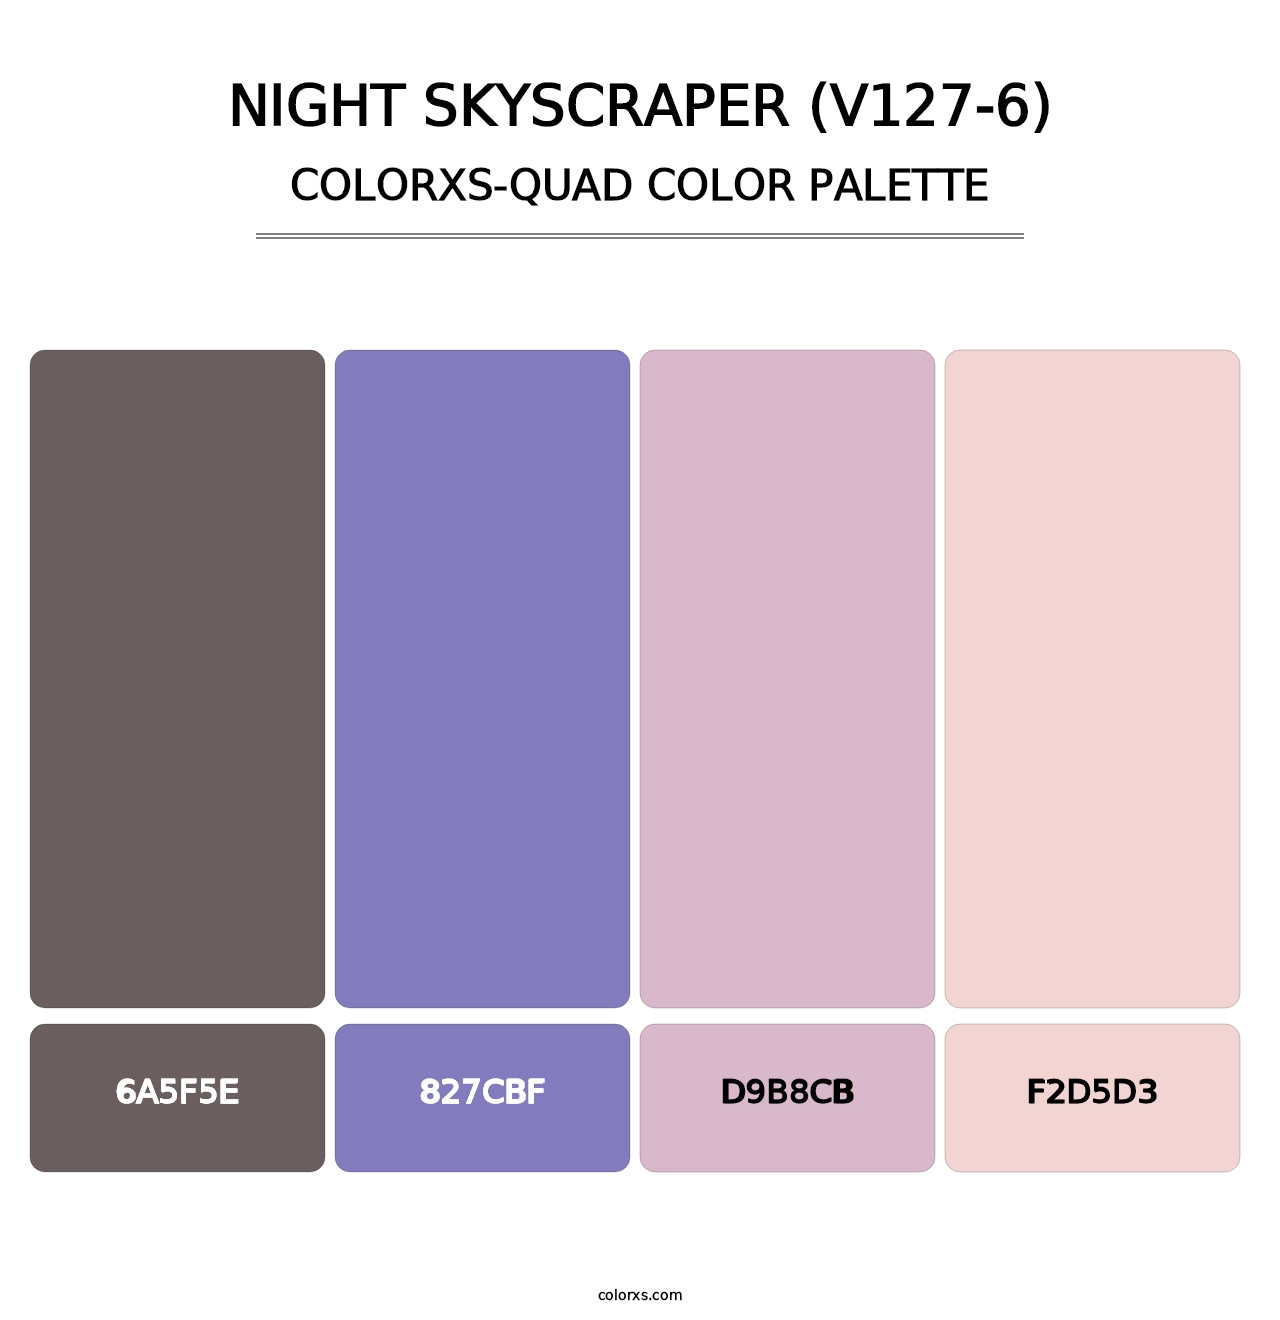 Night Skyscraper (V127-6) - Colorxs Quad Palette